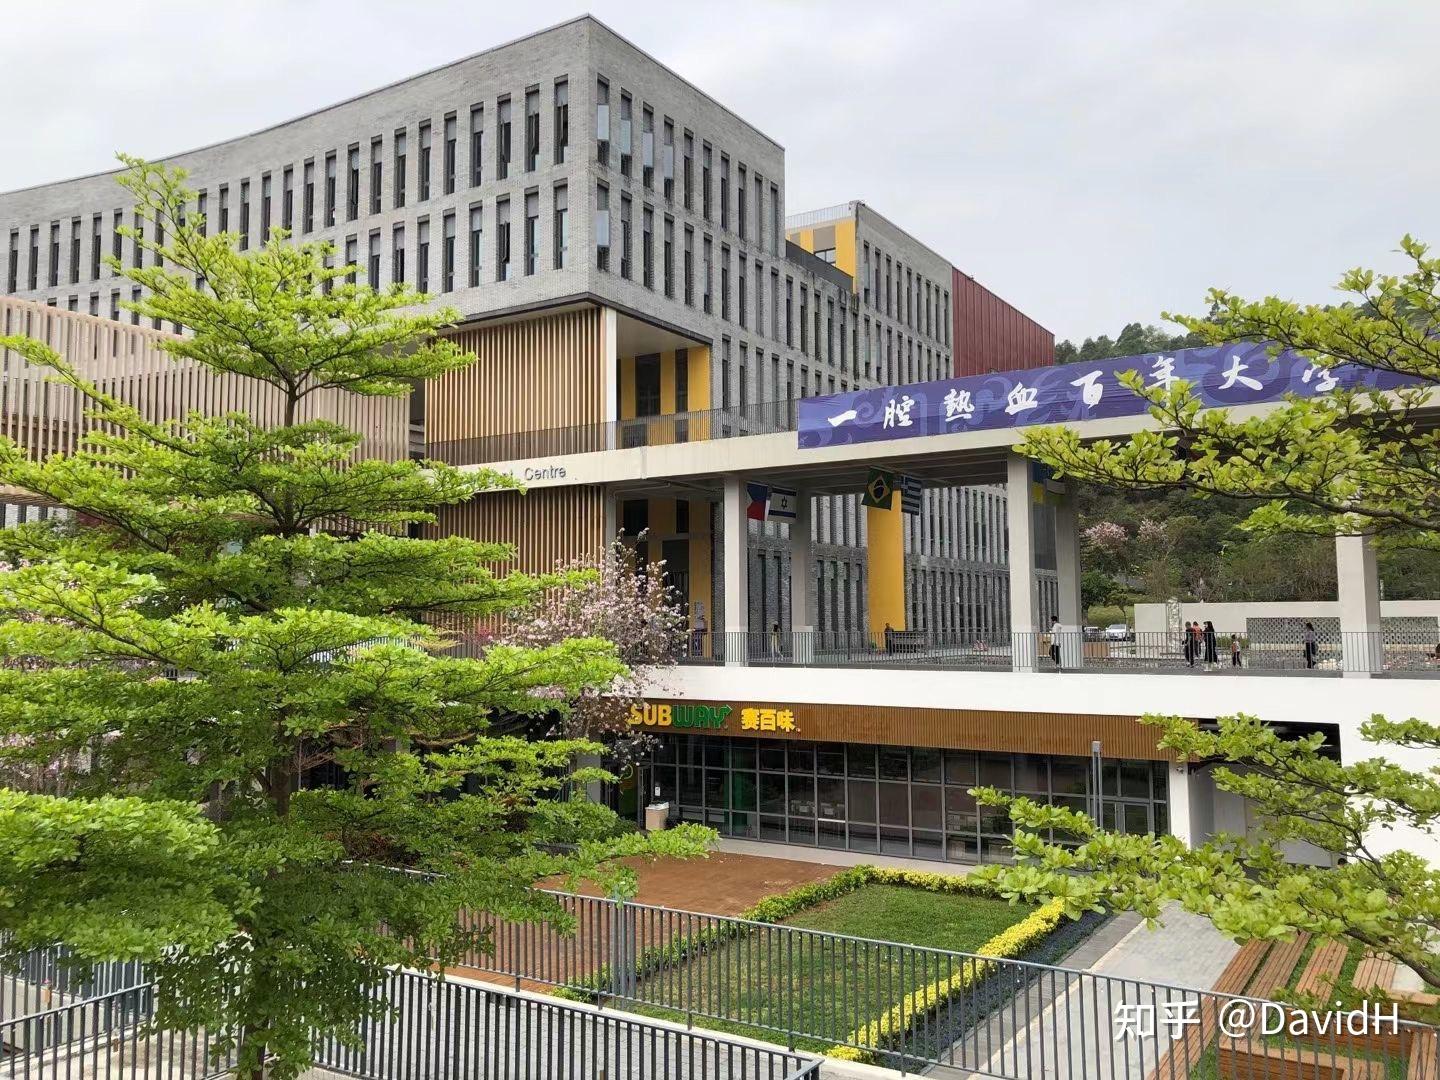 香港中文大学(深圳)音乐学院(又称深圳音乐学院),是深圳市规划建设的